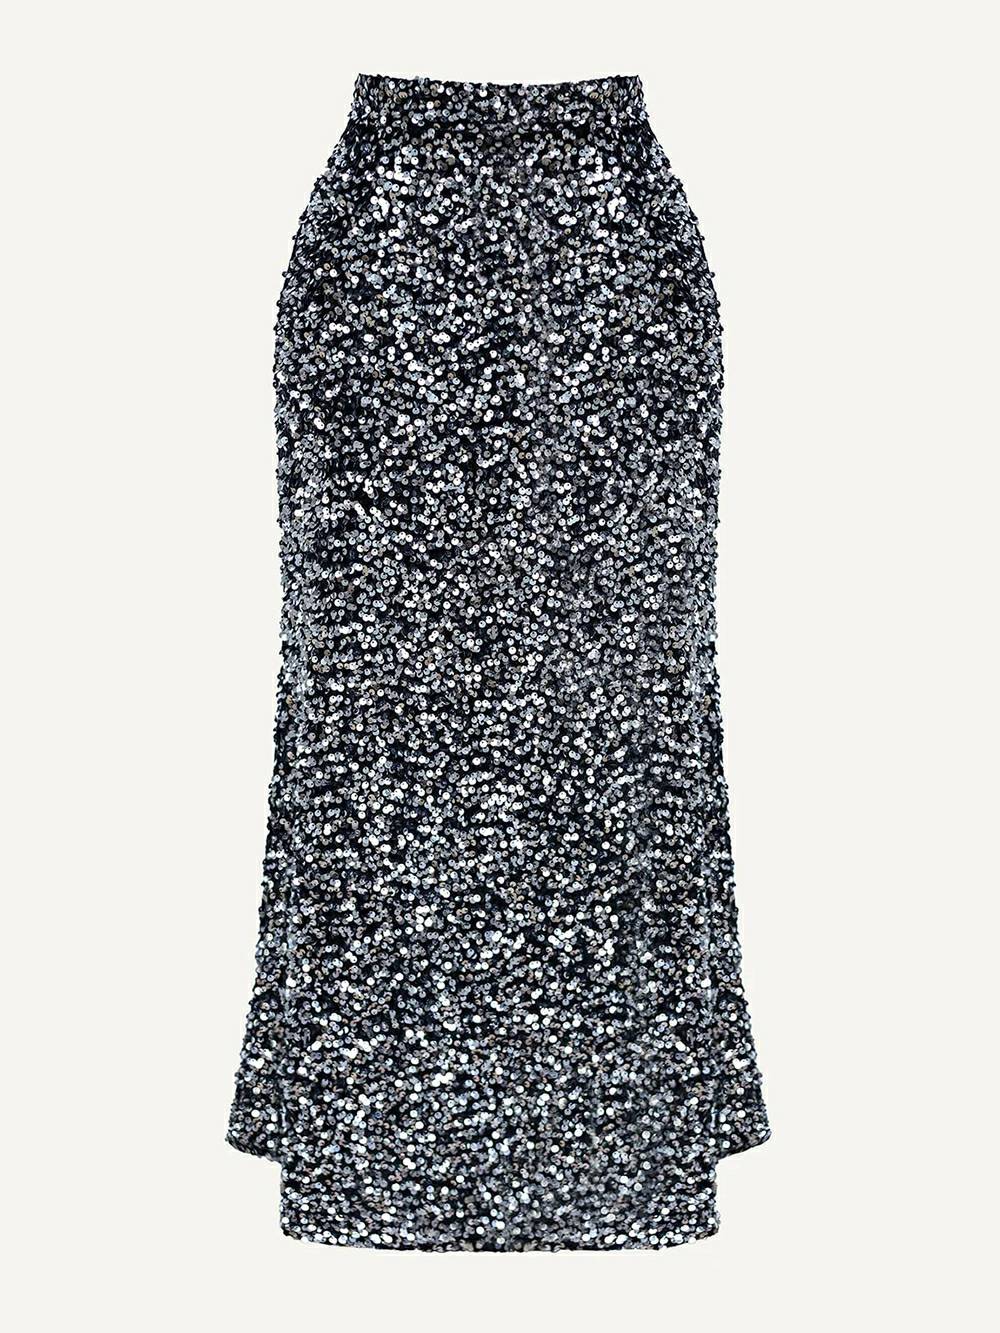 シルバーのスパンコール装飾ベルベット スカート